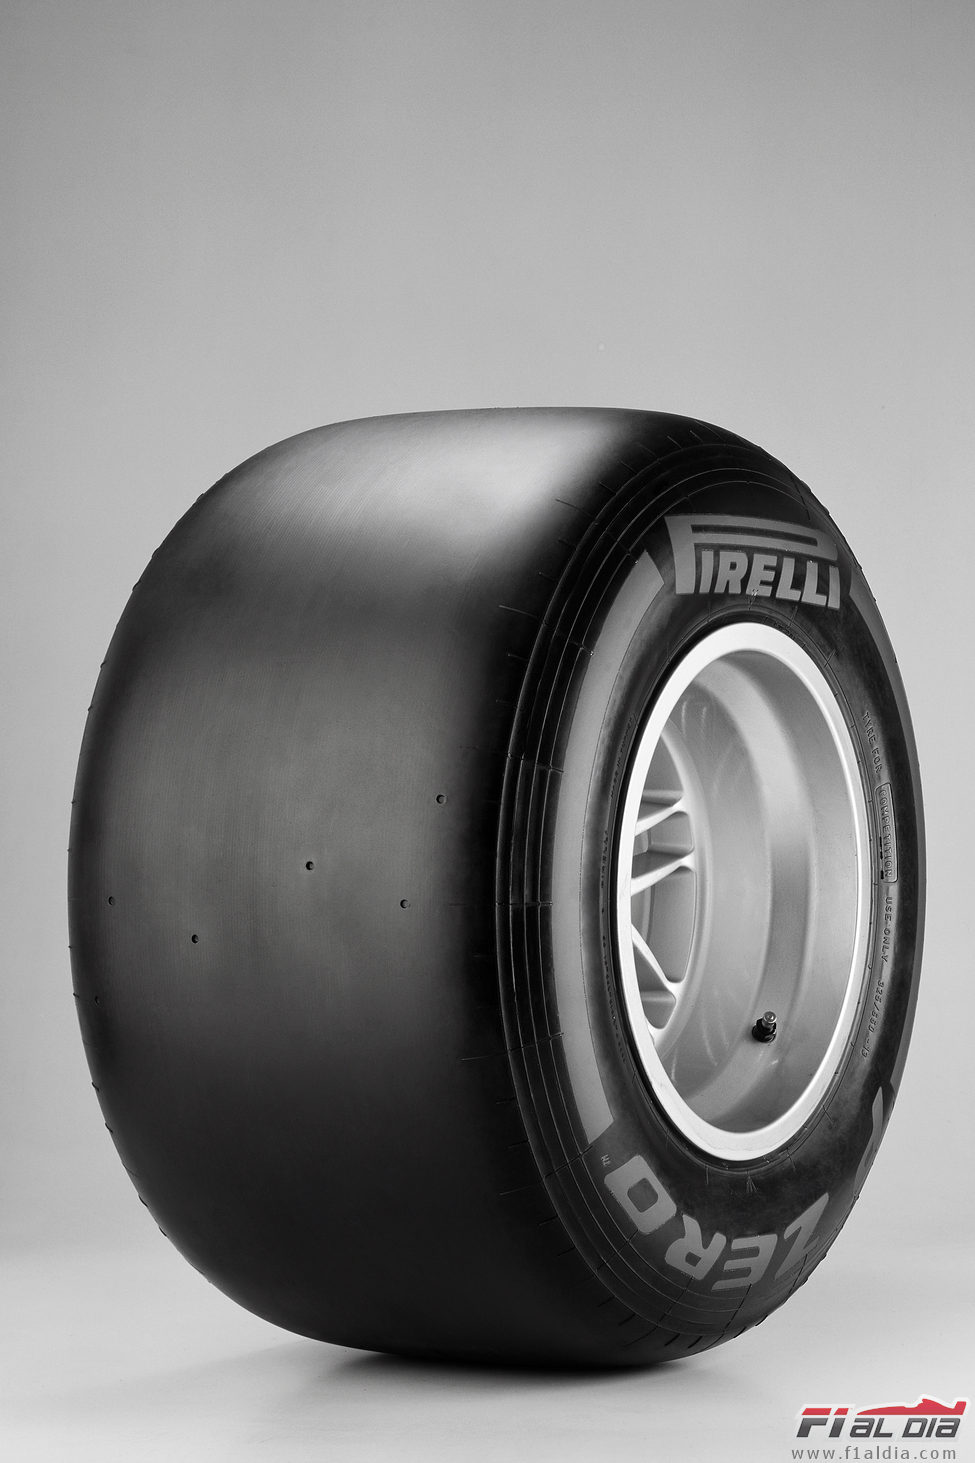 Pirelli 2012: duro (lateral)